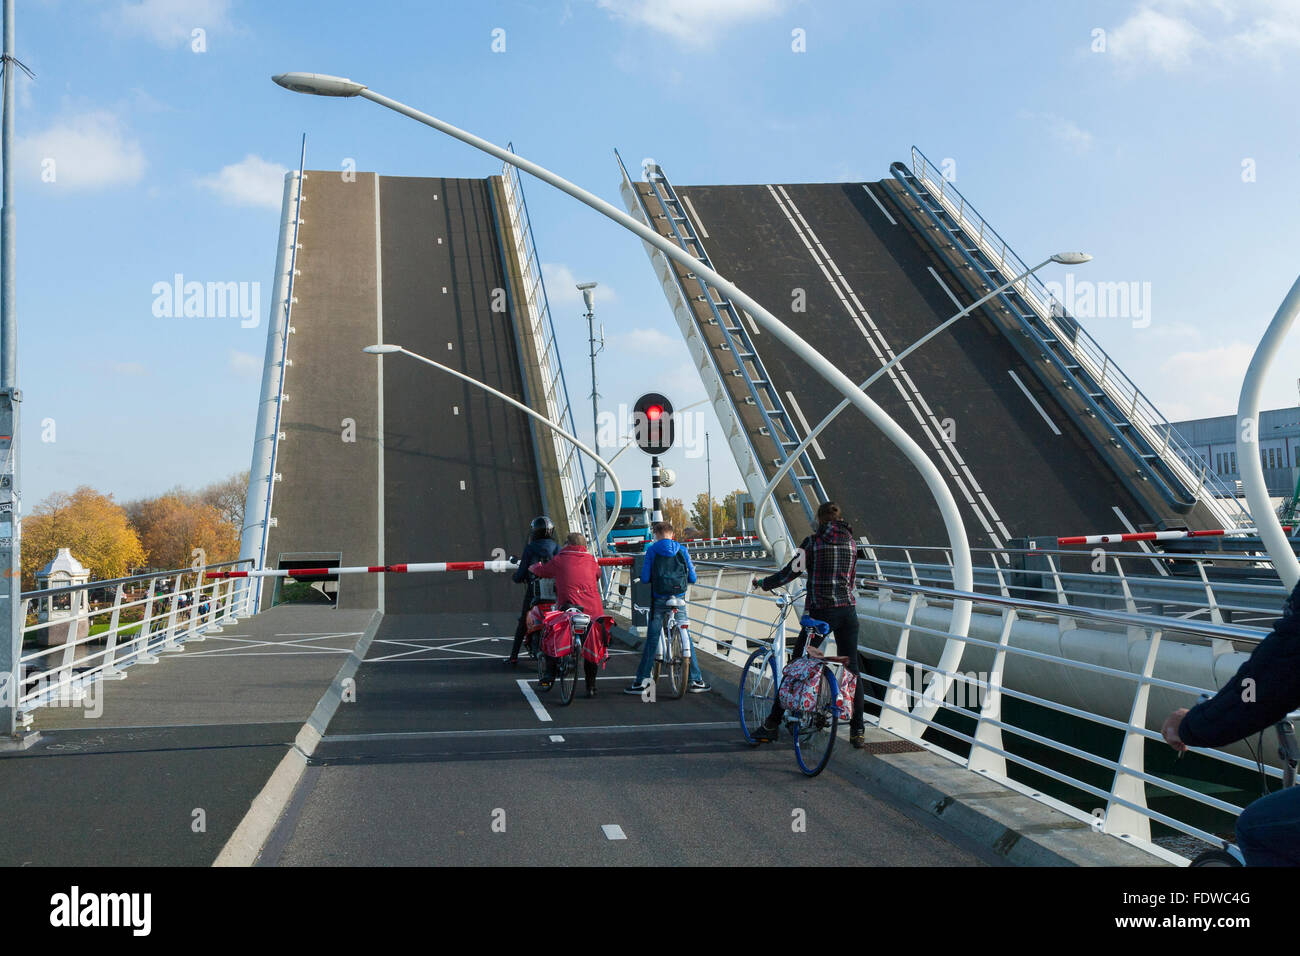 Radfahrer zu warten, da der Julianabrug Juliana Brücke öffnet sich, um ein Schiff zu lassen / Kahn / Schiff pass unter. Holland, die Niederlande. Stockfoto